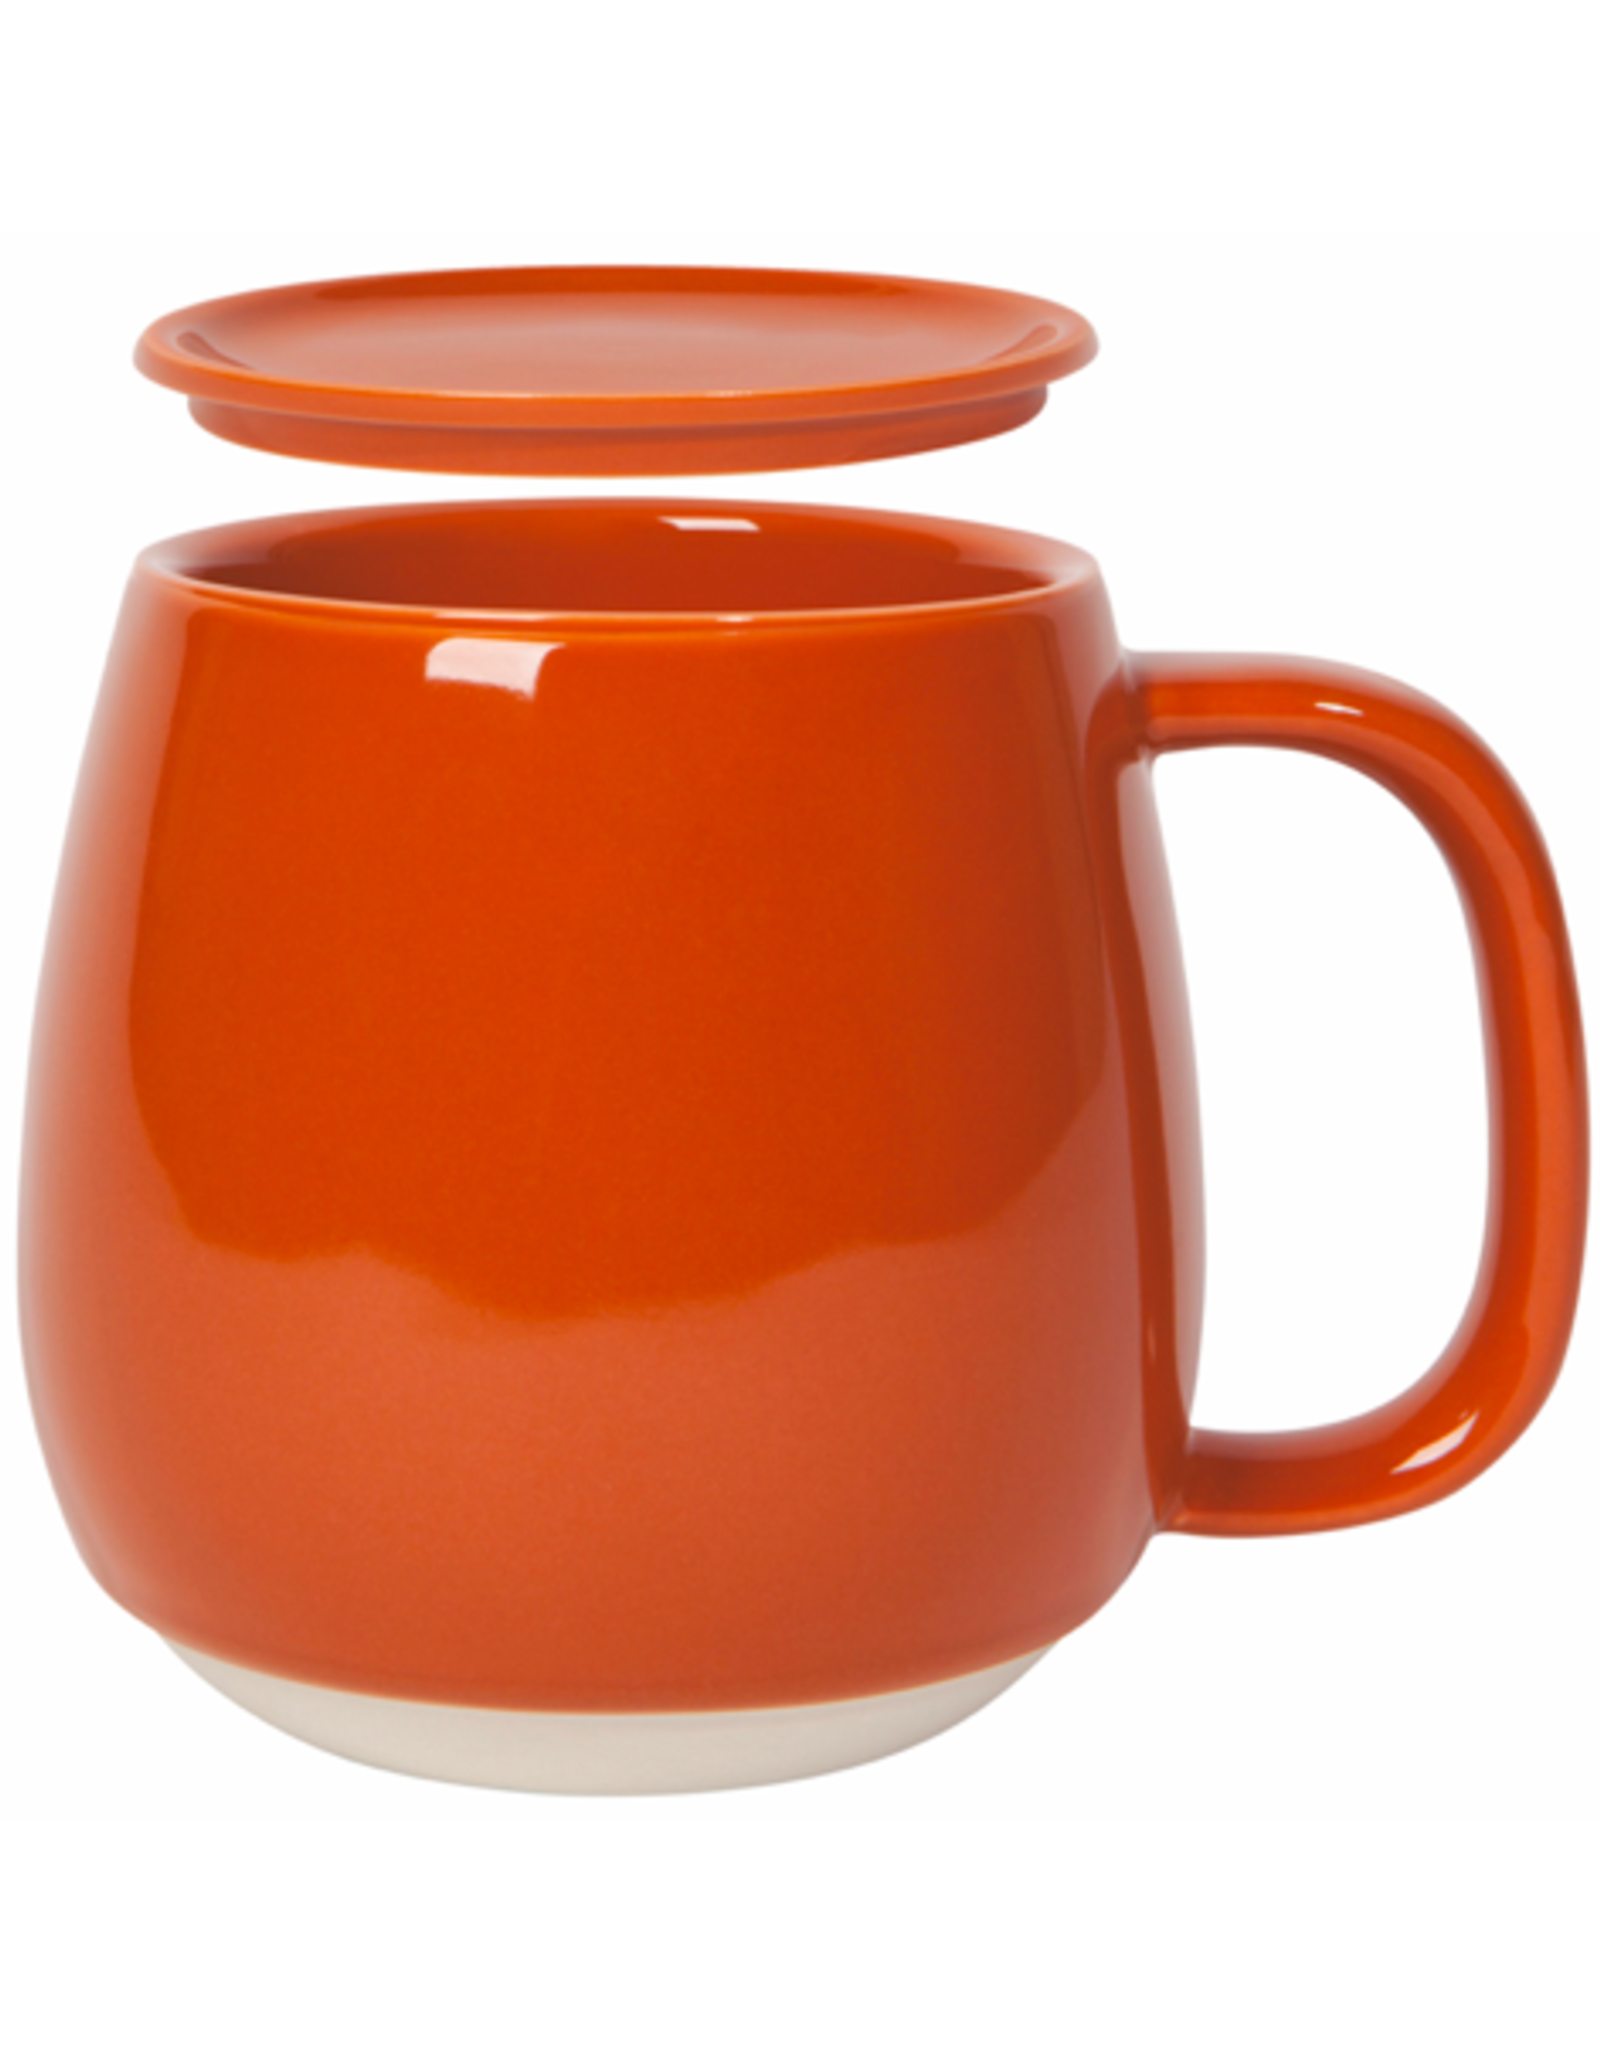 DCA - Mug with Lid / Hue, Brick